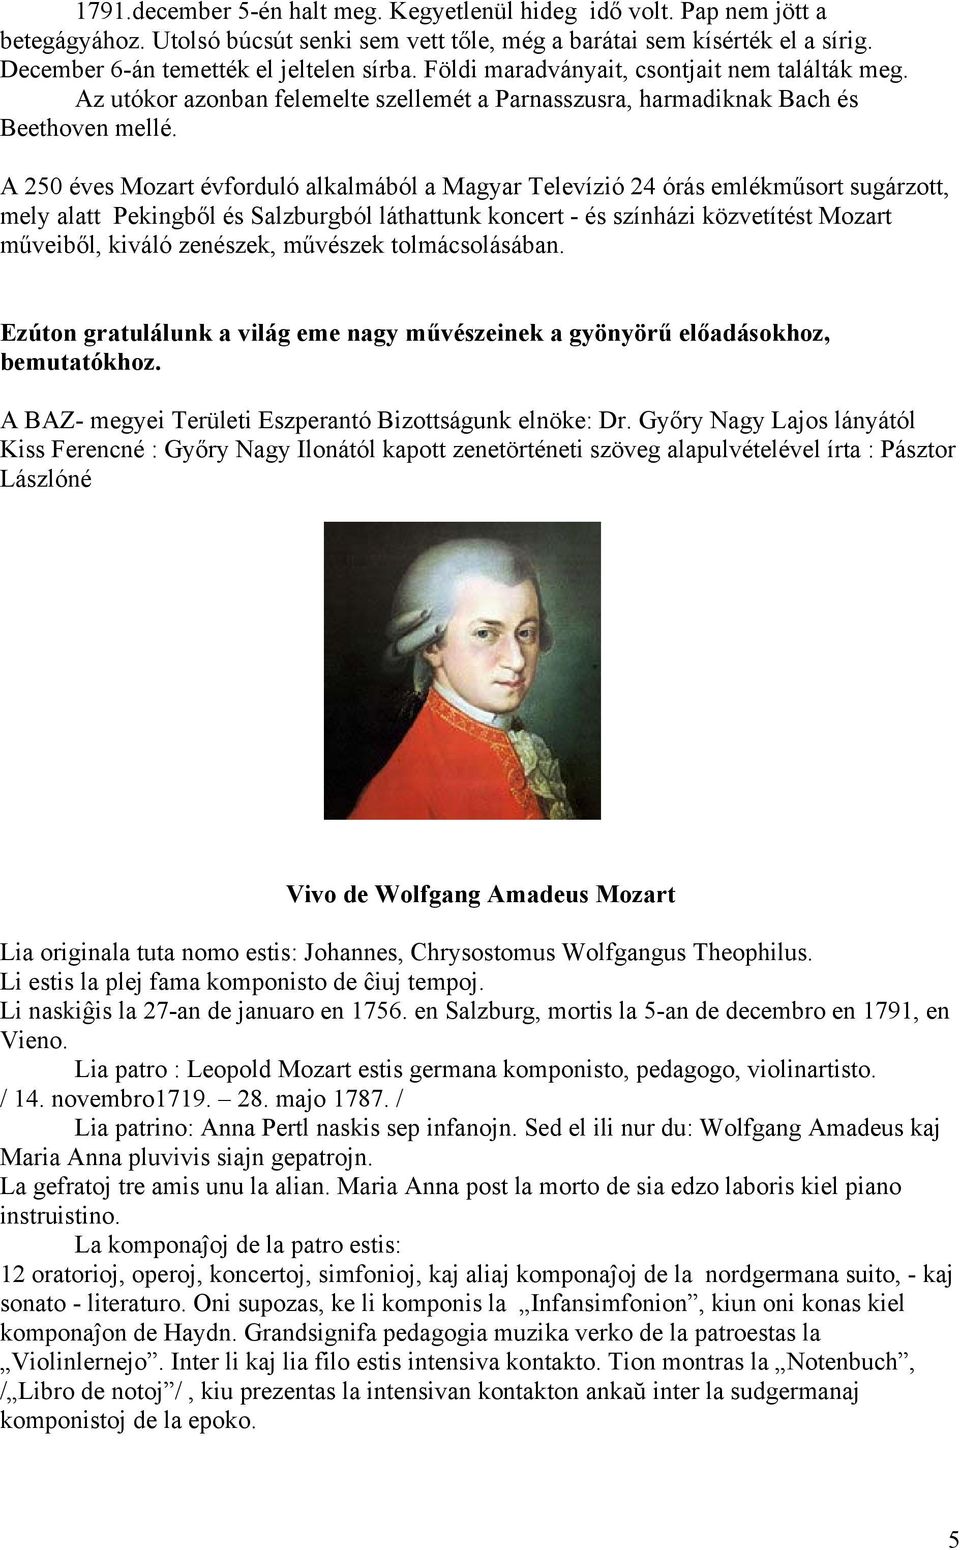 A 250 éves Mozart évforduló alkalmából a Magyar Televízió 24 órás emlékműsort sugárzott, mely alatt Pekingből és Salzburgból láthattunk koncert - és színházi közvetítést Mozart műveiből, kiváló